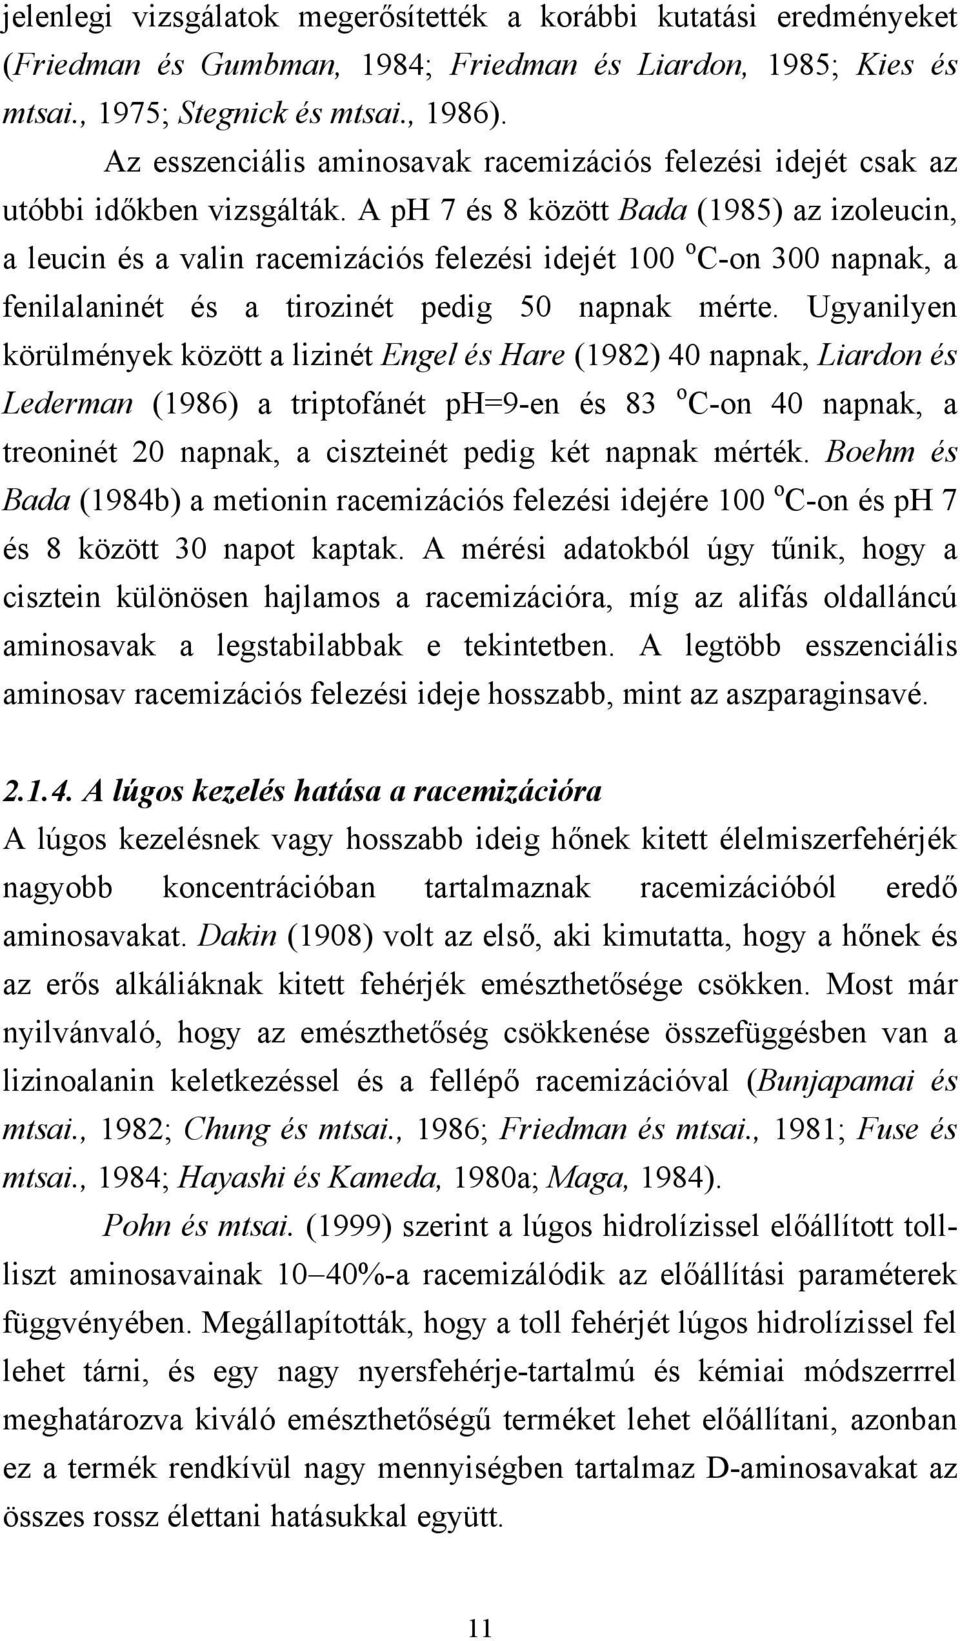 A ph 7 és 8 között Bada (1985) az izoleucin, a leucin és a valin racemizációs felezési idejét 100 o C-on 300 napnak, a fenilalaninét és a tirozinét pedig 50 napnak mérte.